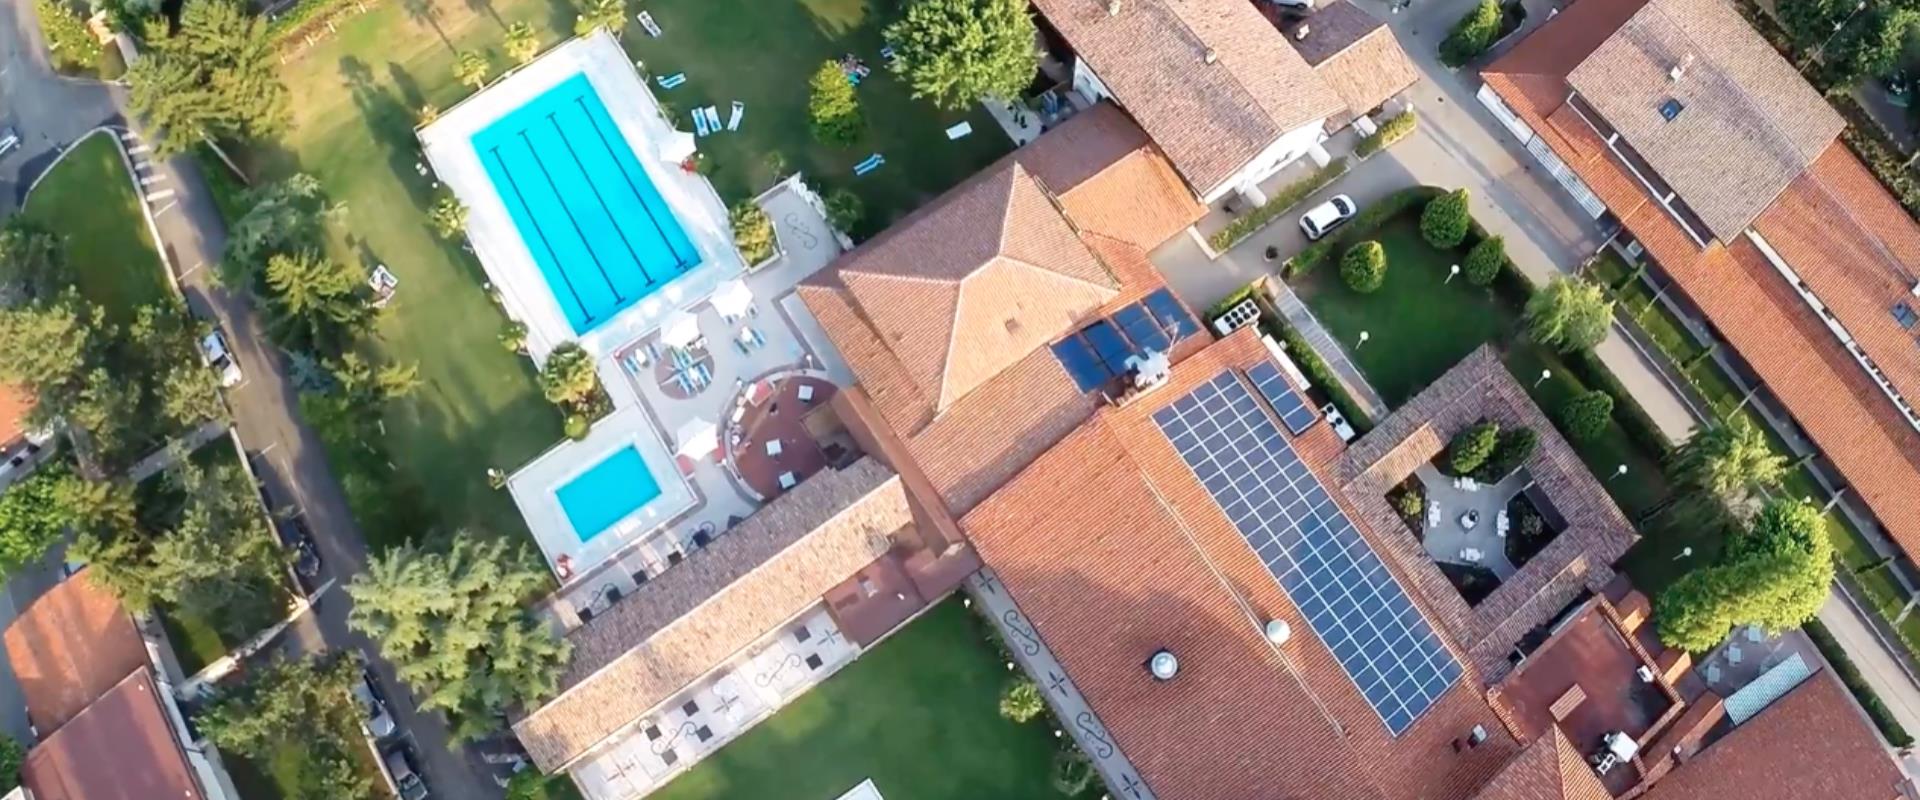 Video di presentazione del Best Western Plus Hotel Modena Resort realizzato utilizzando un drone.